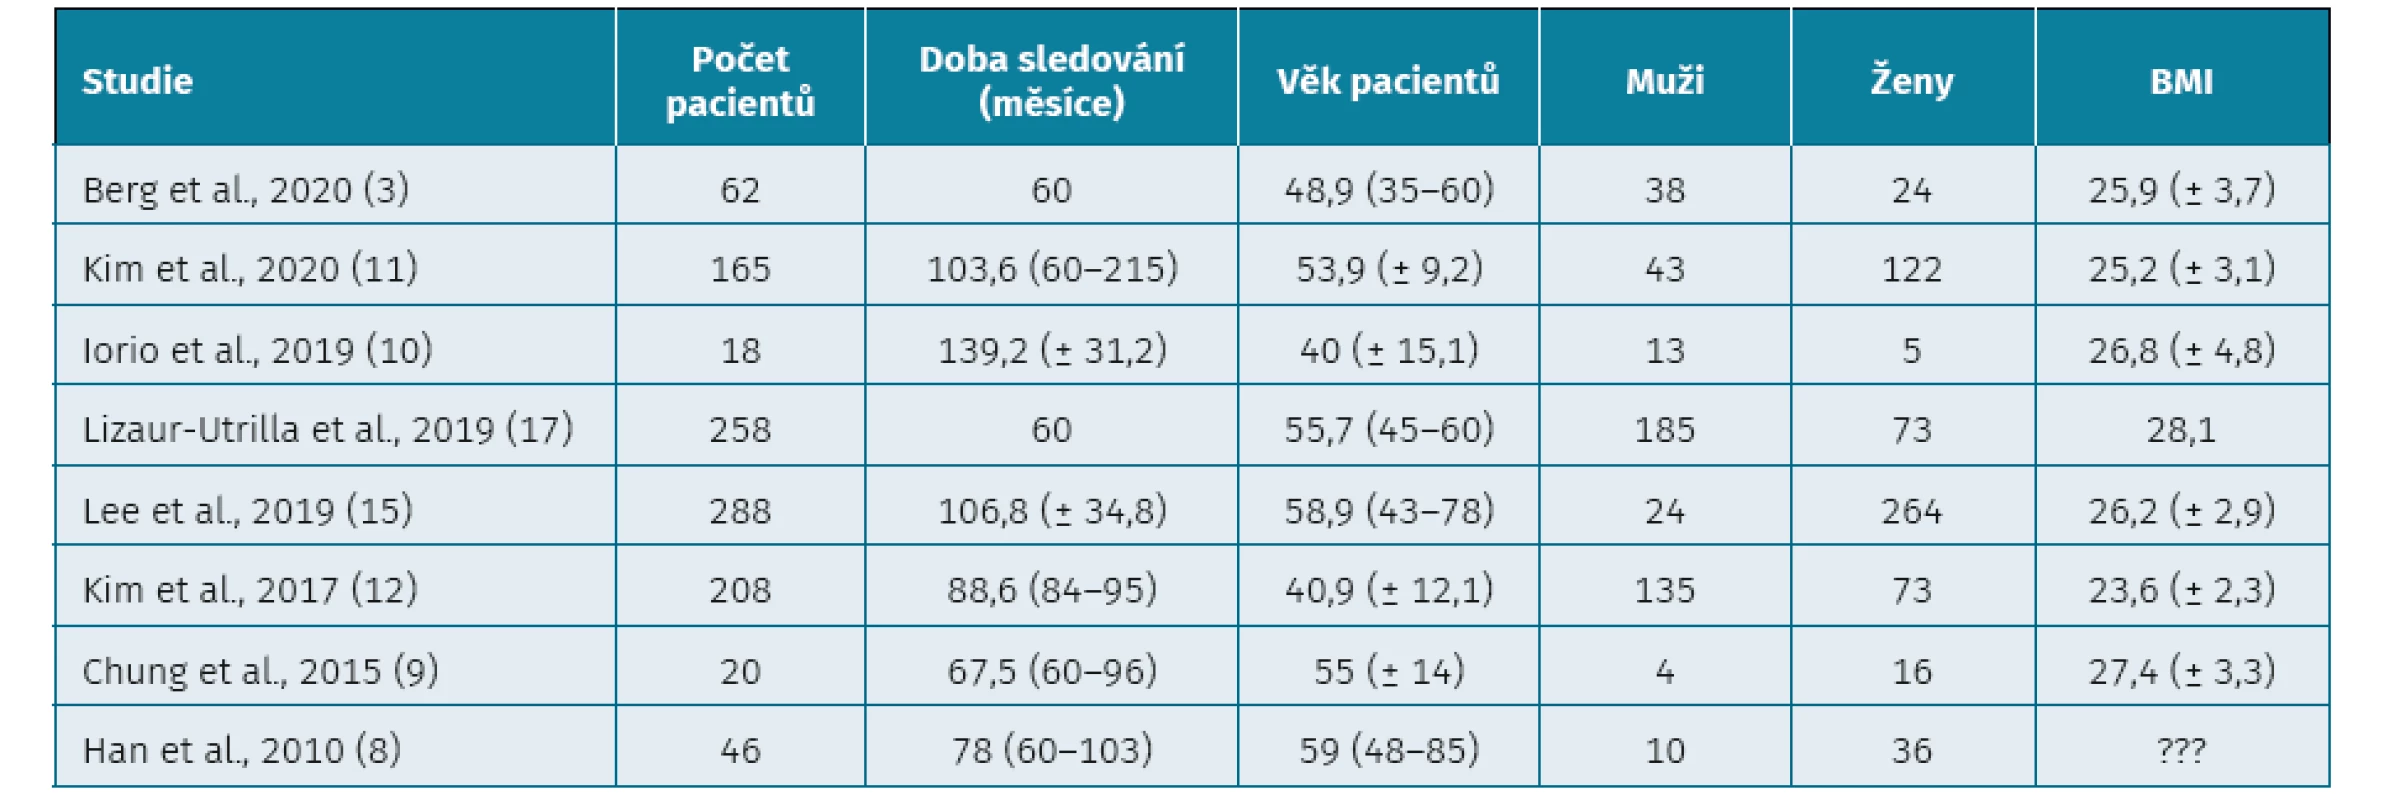 Základní demografické údaje pacientů z jednotlivých studií*